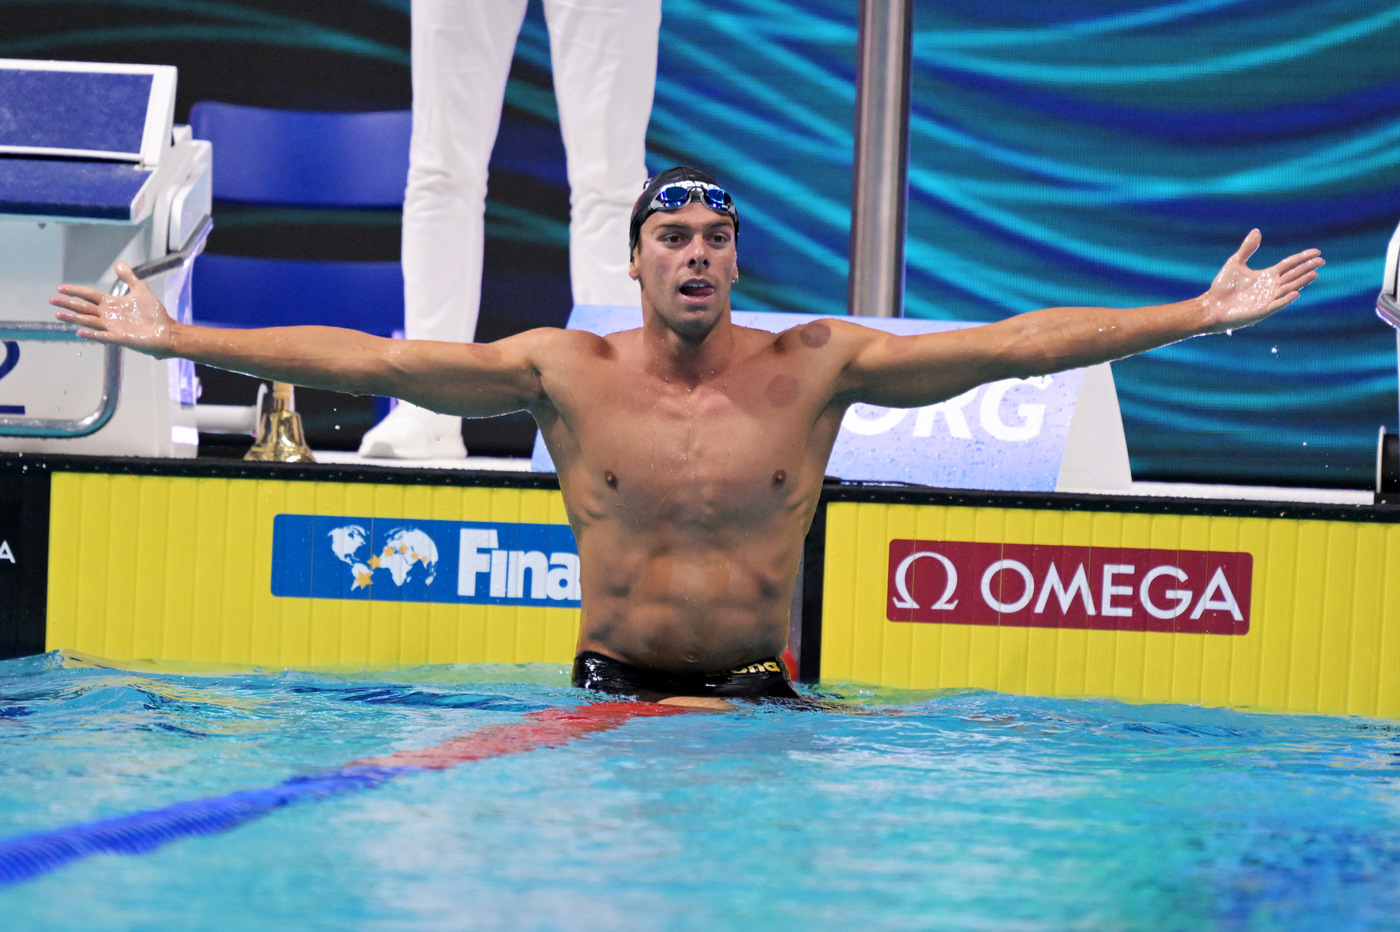 Nuoto, Gregorio Paltrinieri oro agli Europei: “Piscina bestiale, festa incredibile. Galossi è un toro”